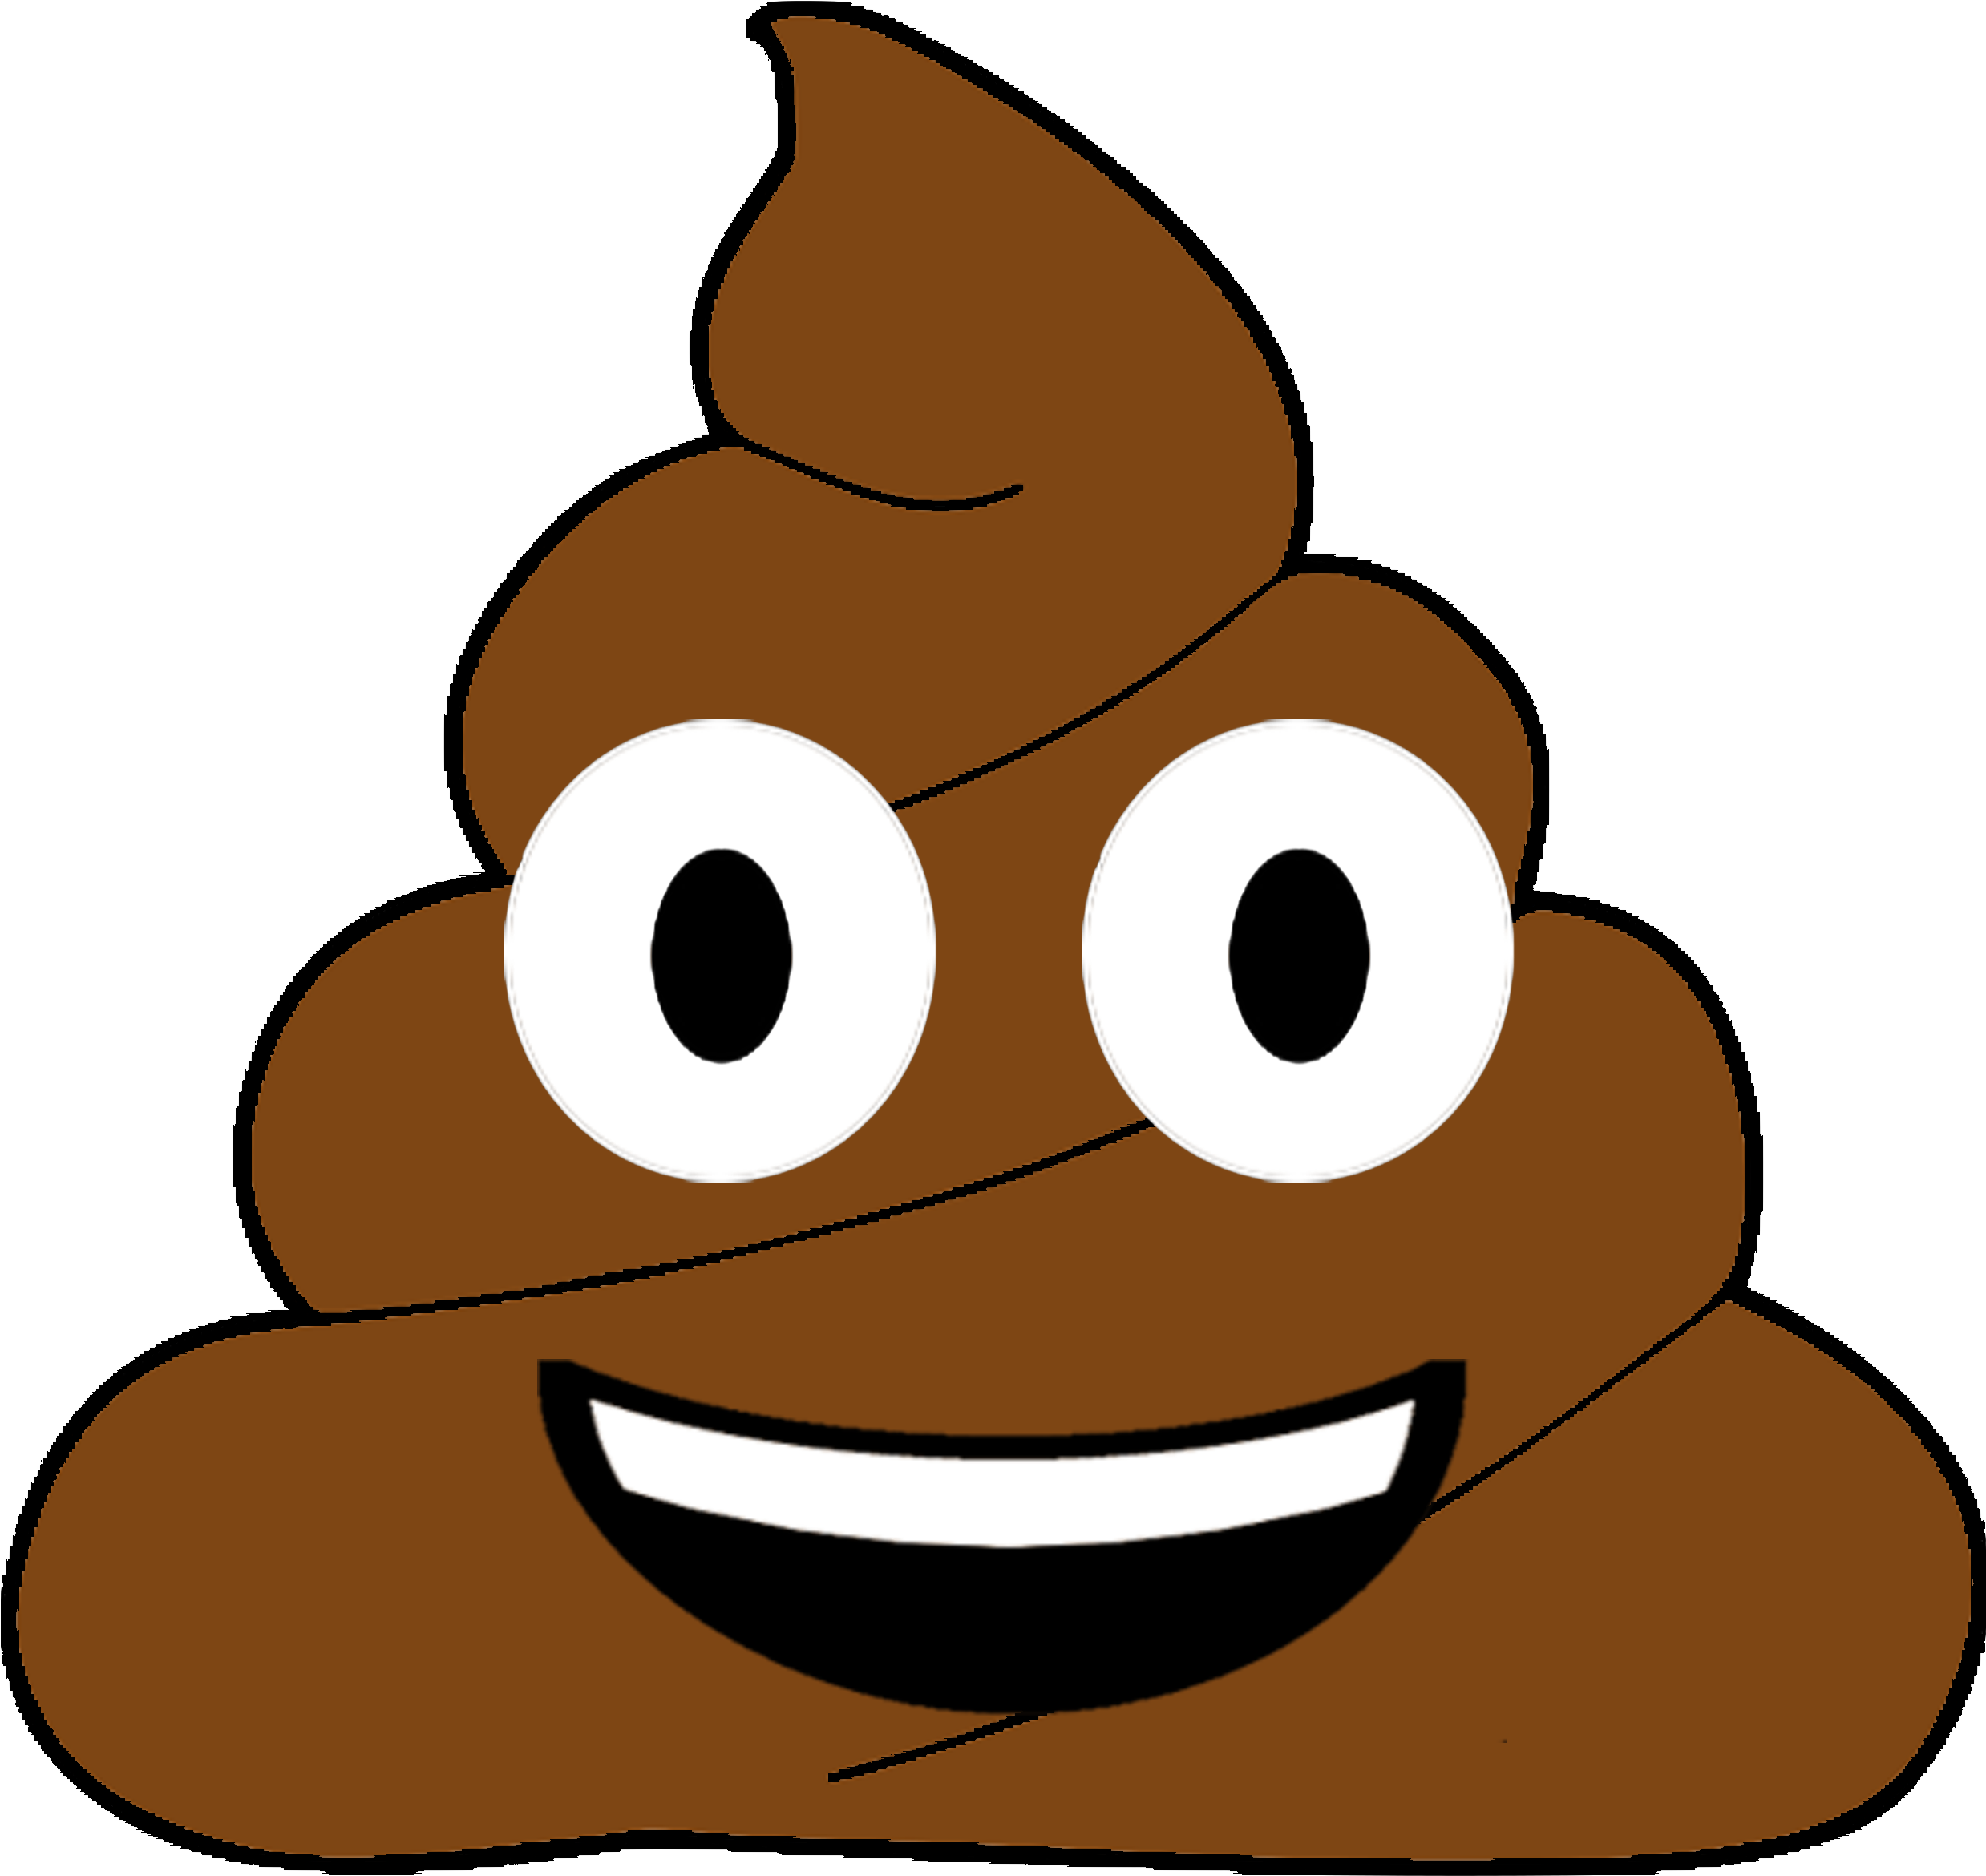 Poop Emoji PNG HD | PNG Mart